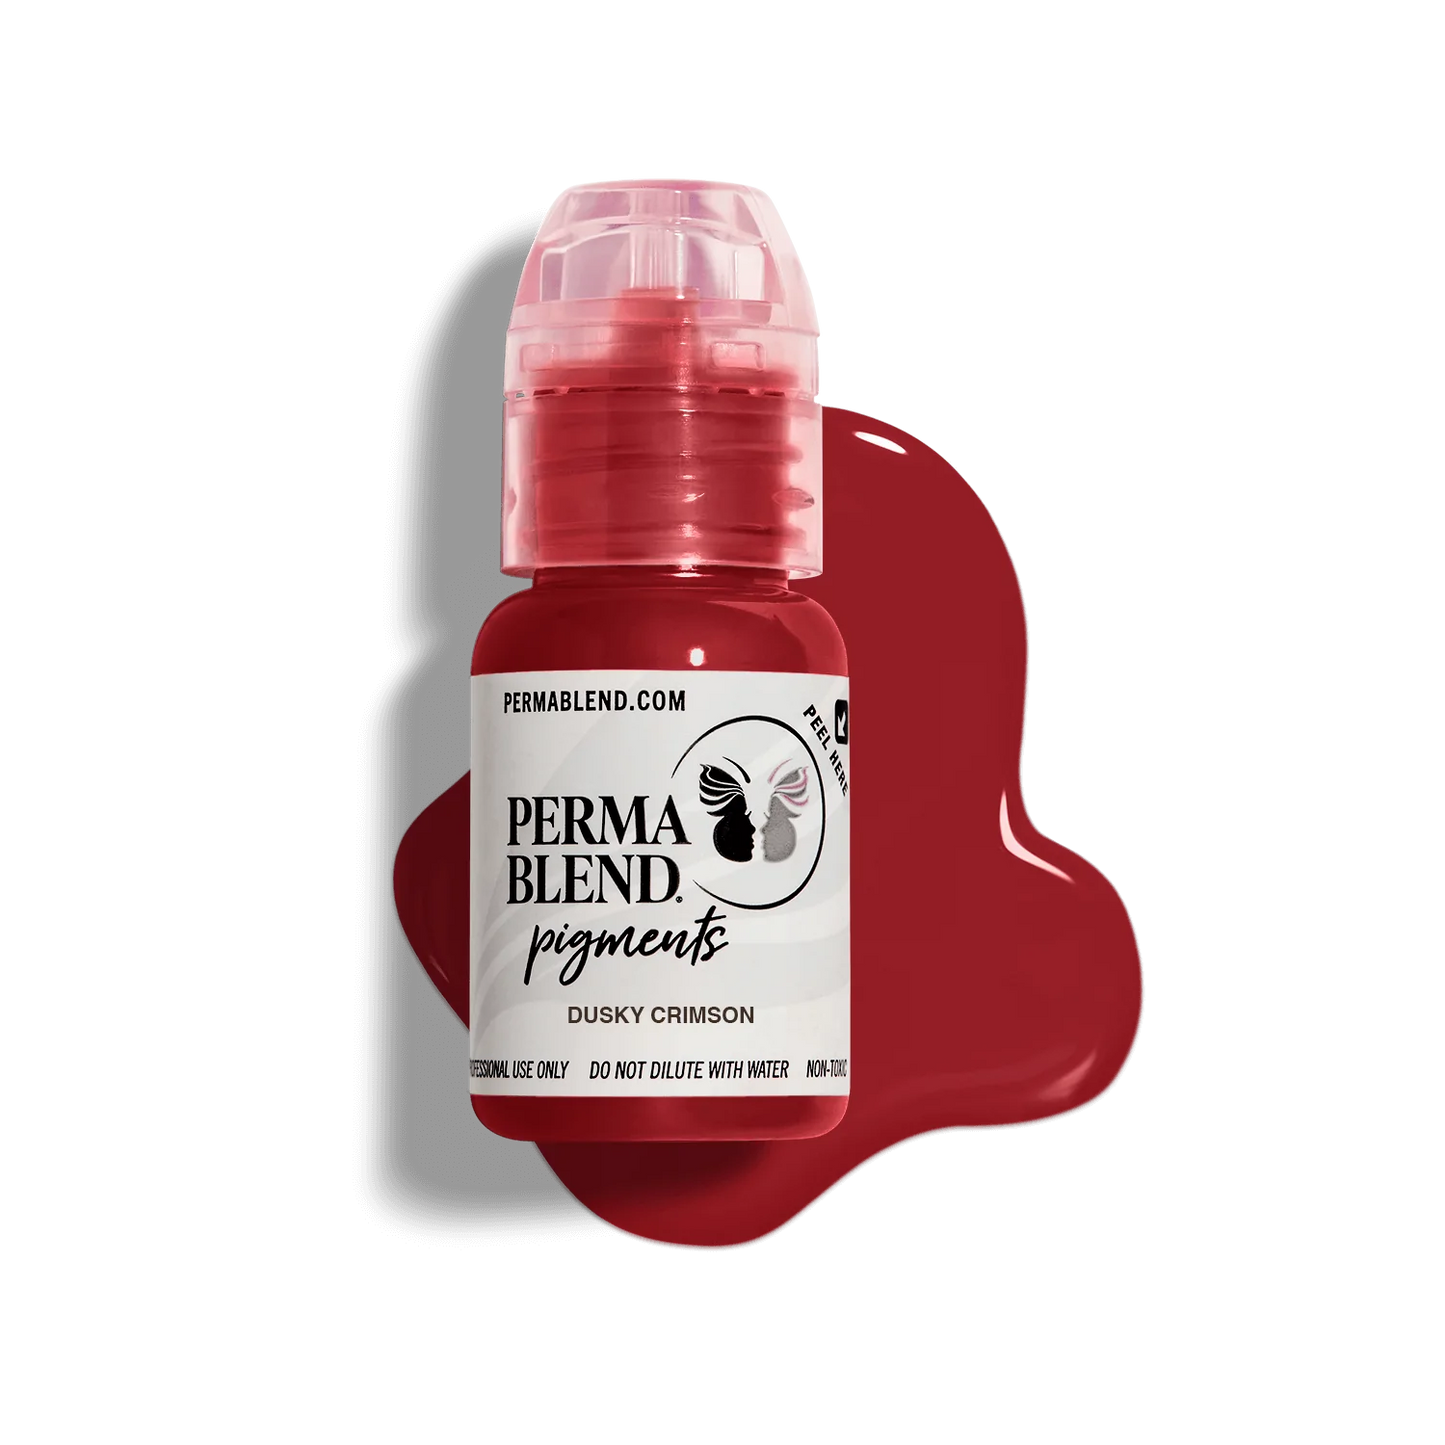 PermaBlend Lip shades - Dusky Crimson